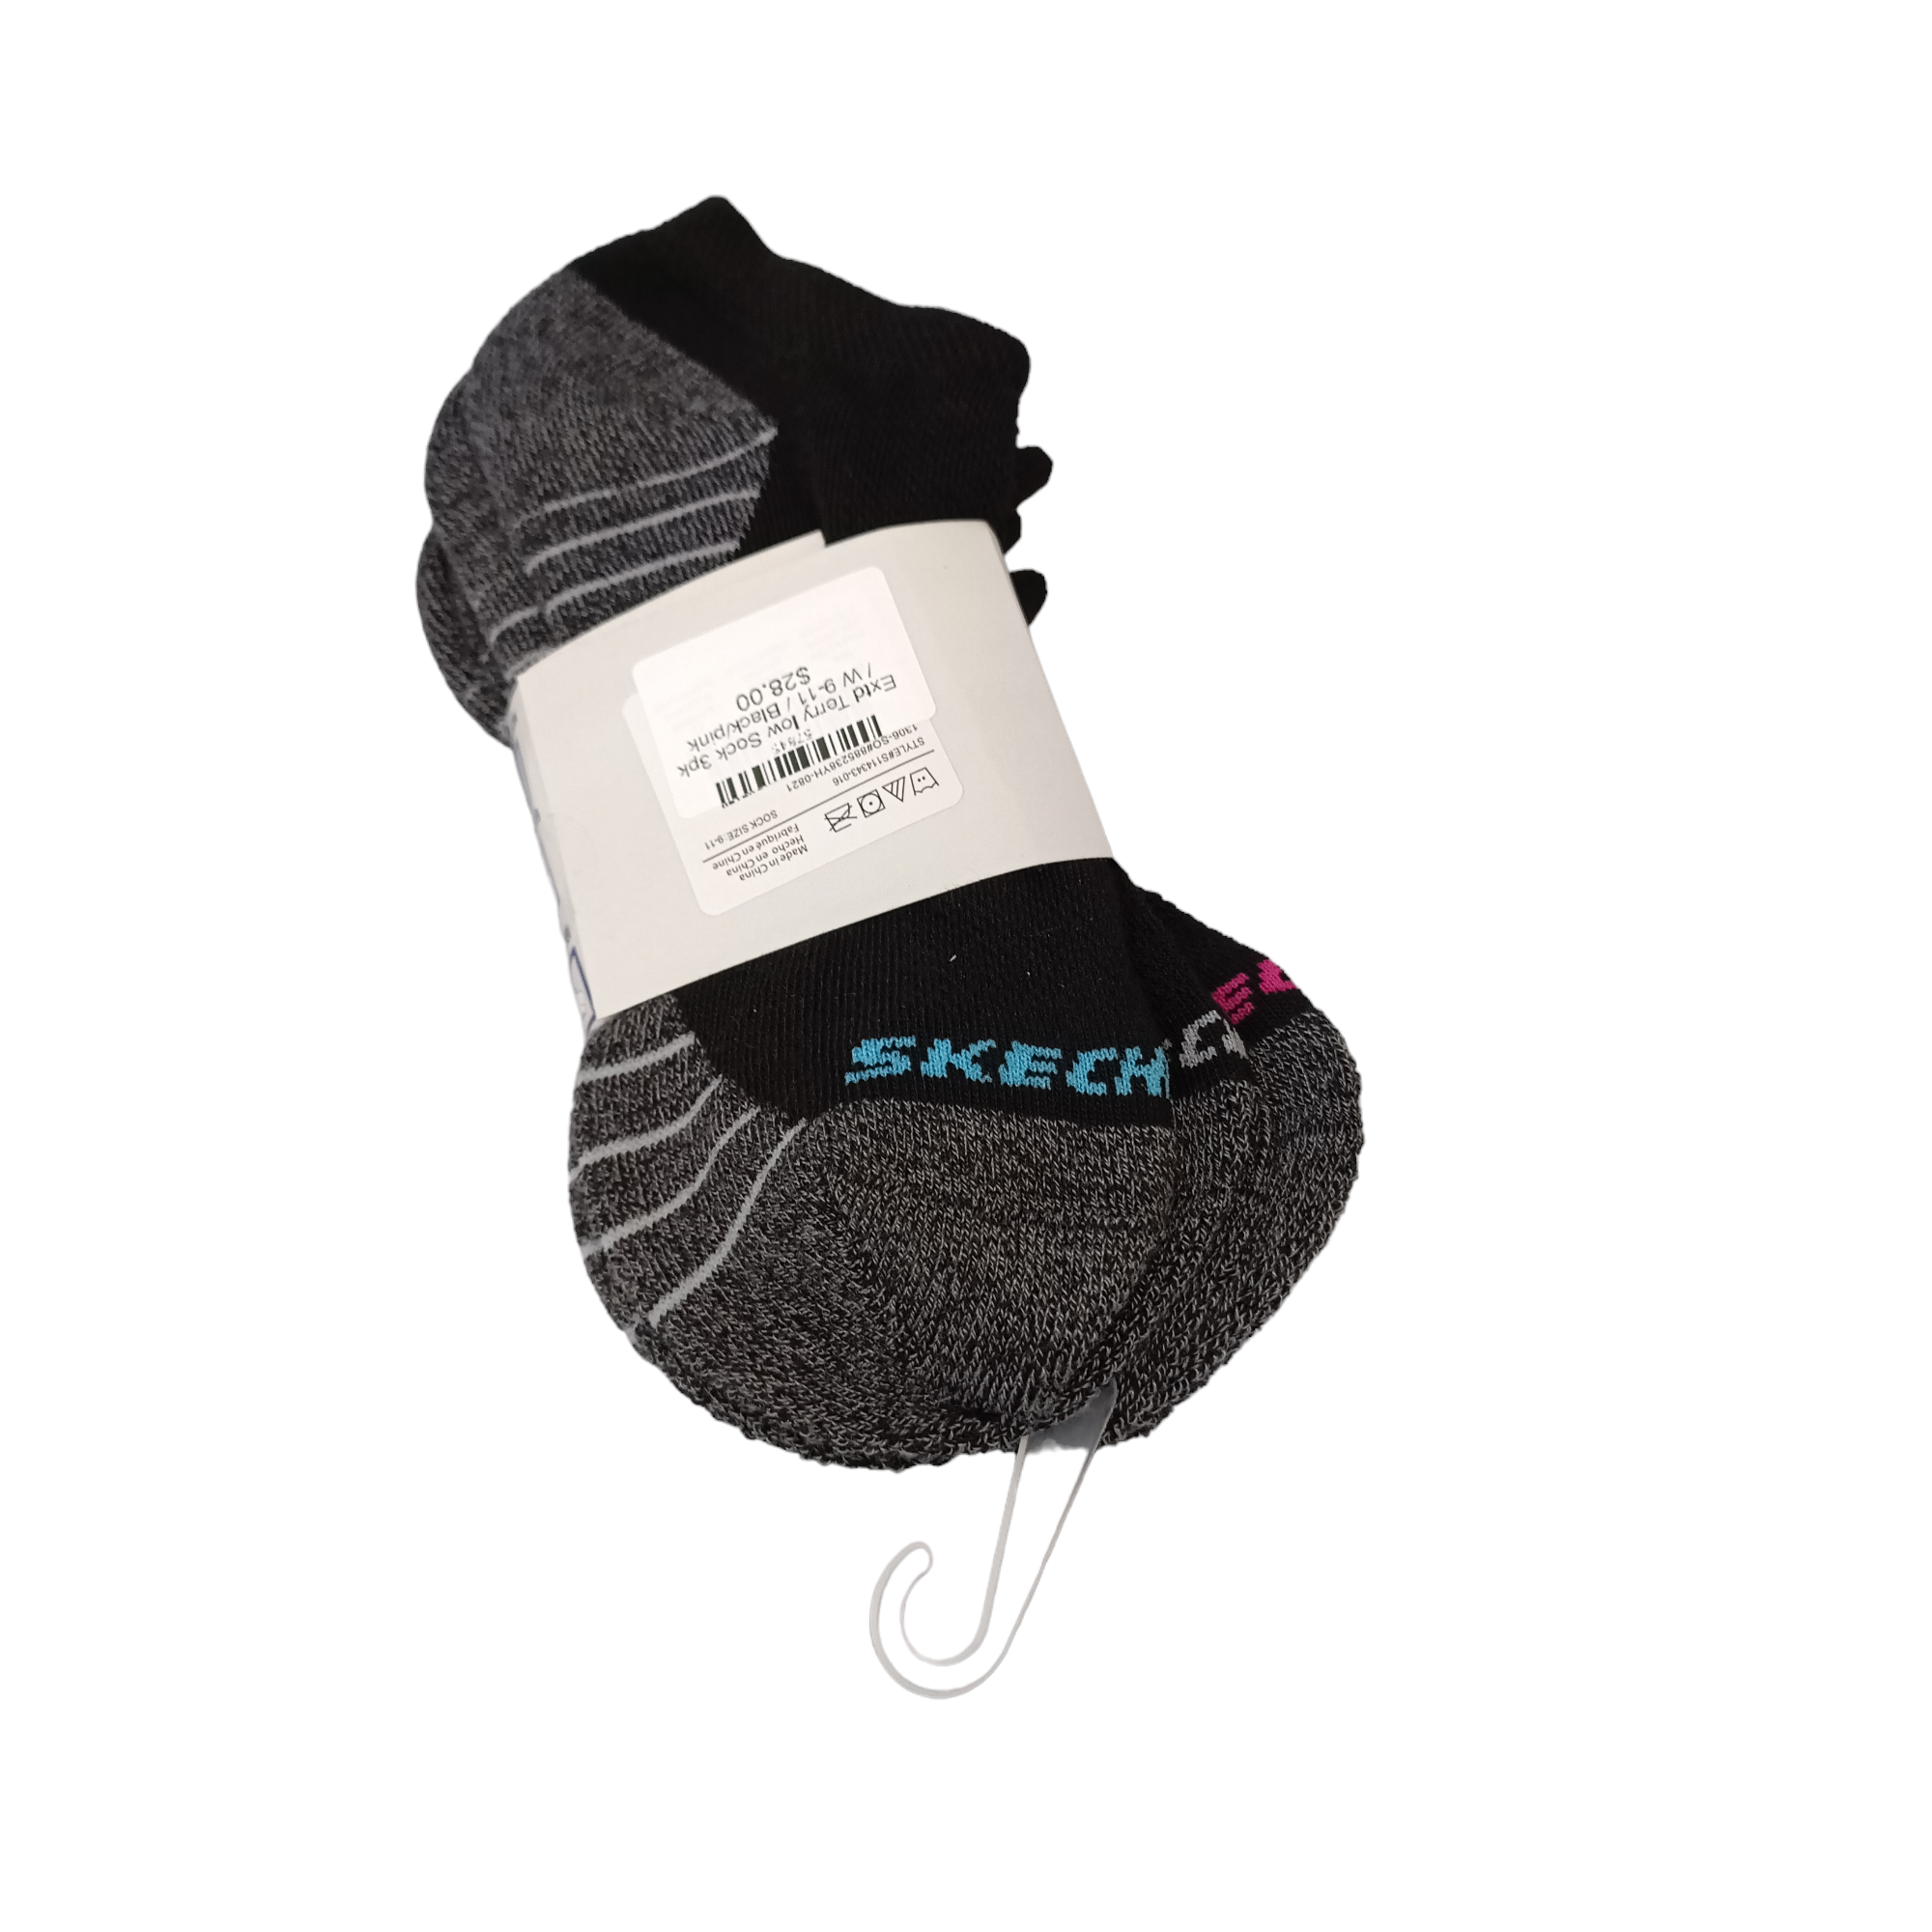 Extd Terry low Sock 3pk - shoe&me - Skechers - Socks - Socks, Womens